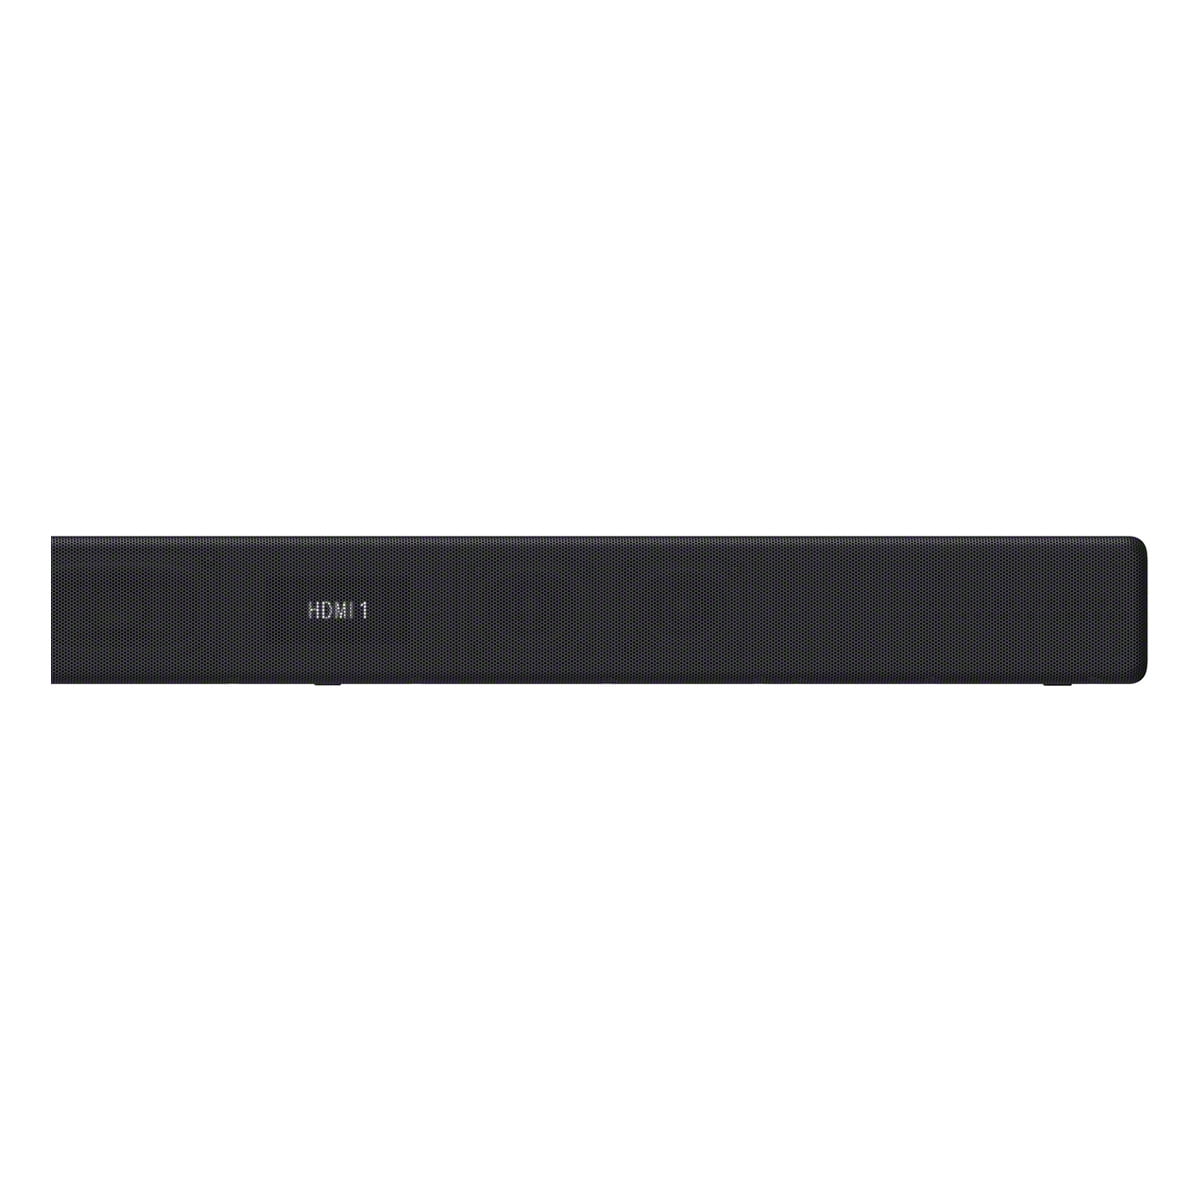 Sony - Barra de Sonido 7.1 Dolby Atmos - HT-A7000//M1 LA9